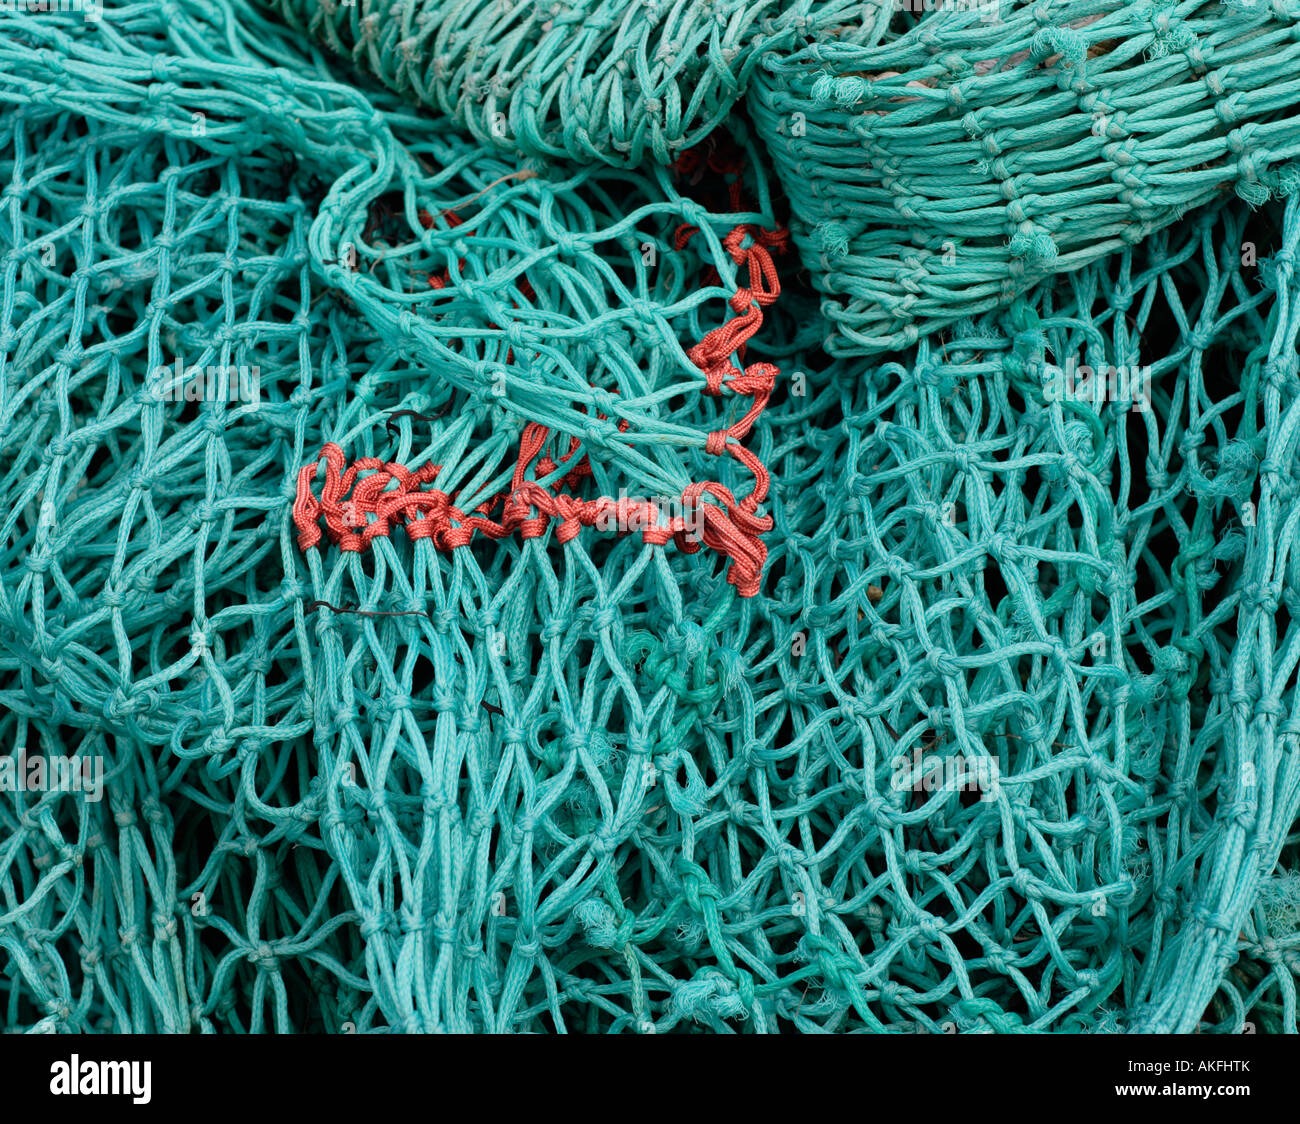 https://c8.alamy.com/comp/AKFHTK/detail-of-deep-sea-fishing-nets-AKFHTK.jpg